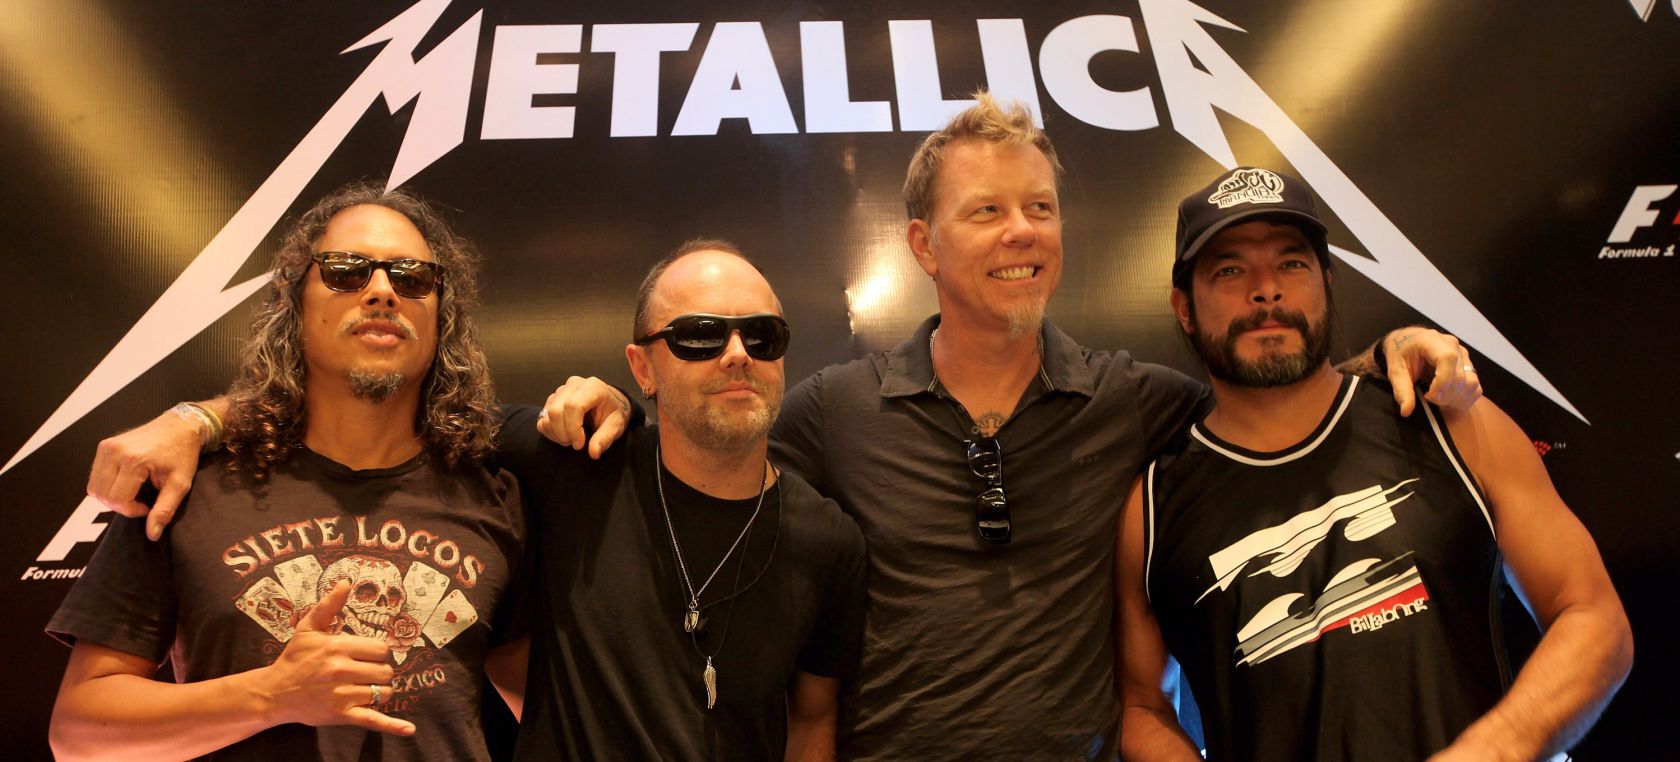 Metallica tiran de nostalgia para poner el broche final a la Super Bowl